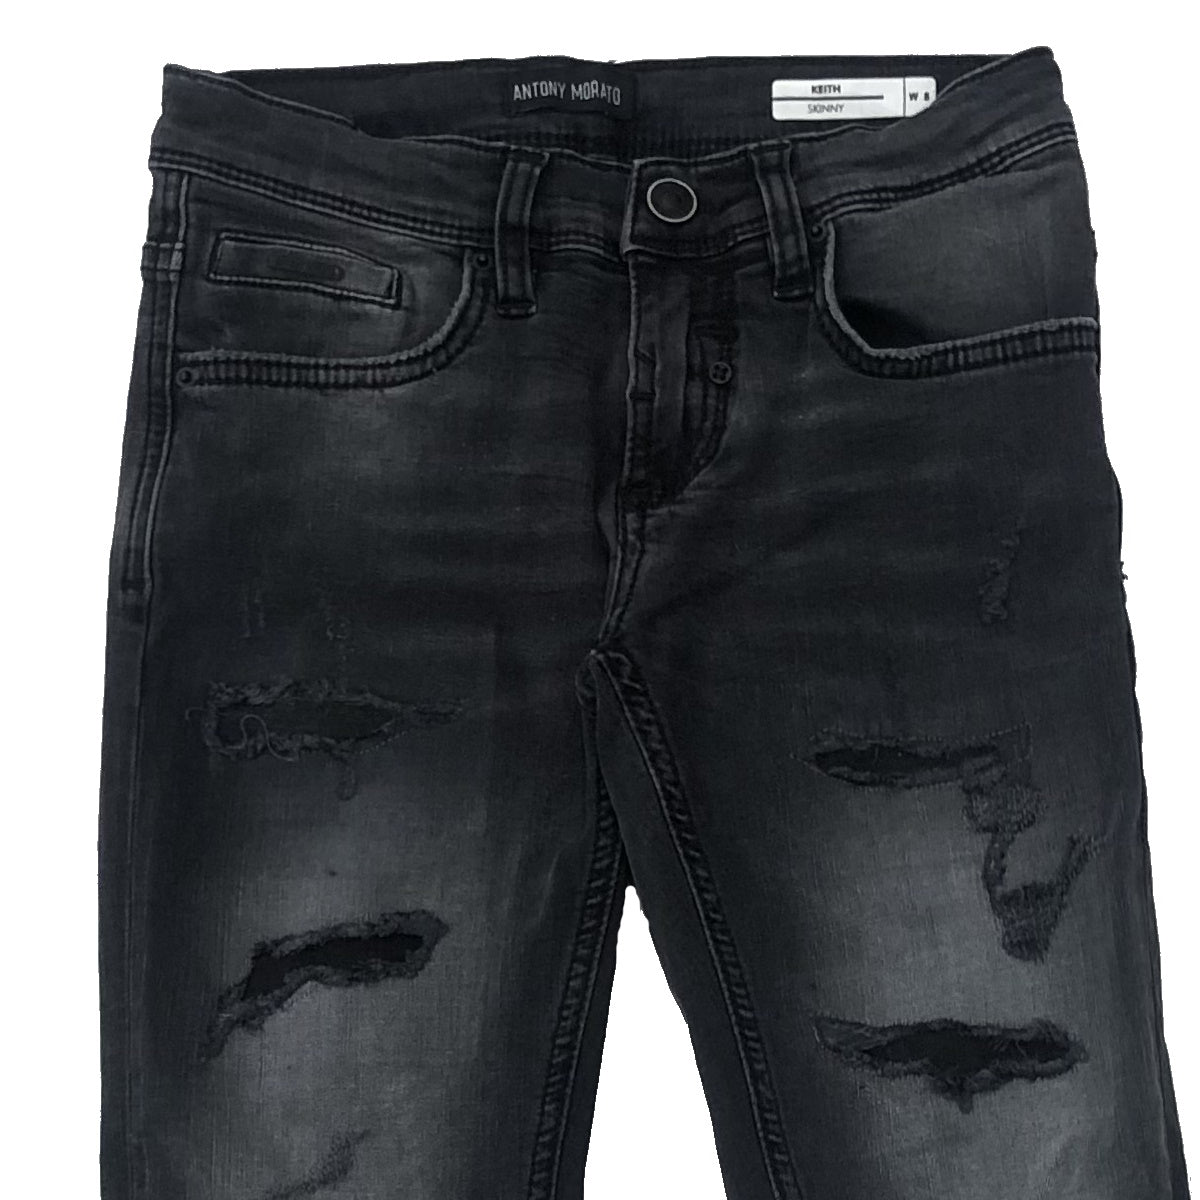 Antony Morato jeans